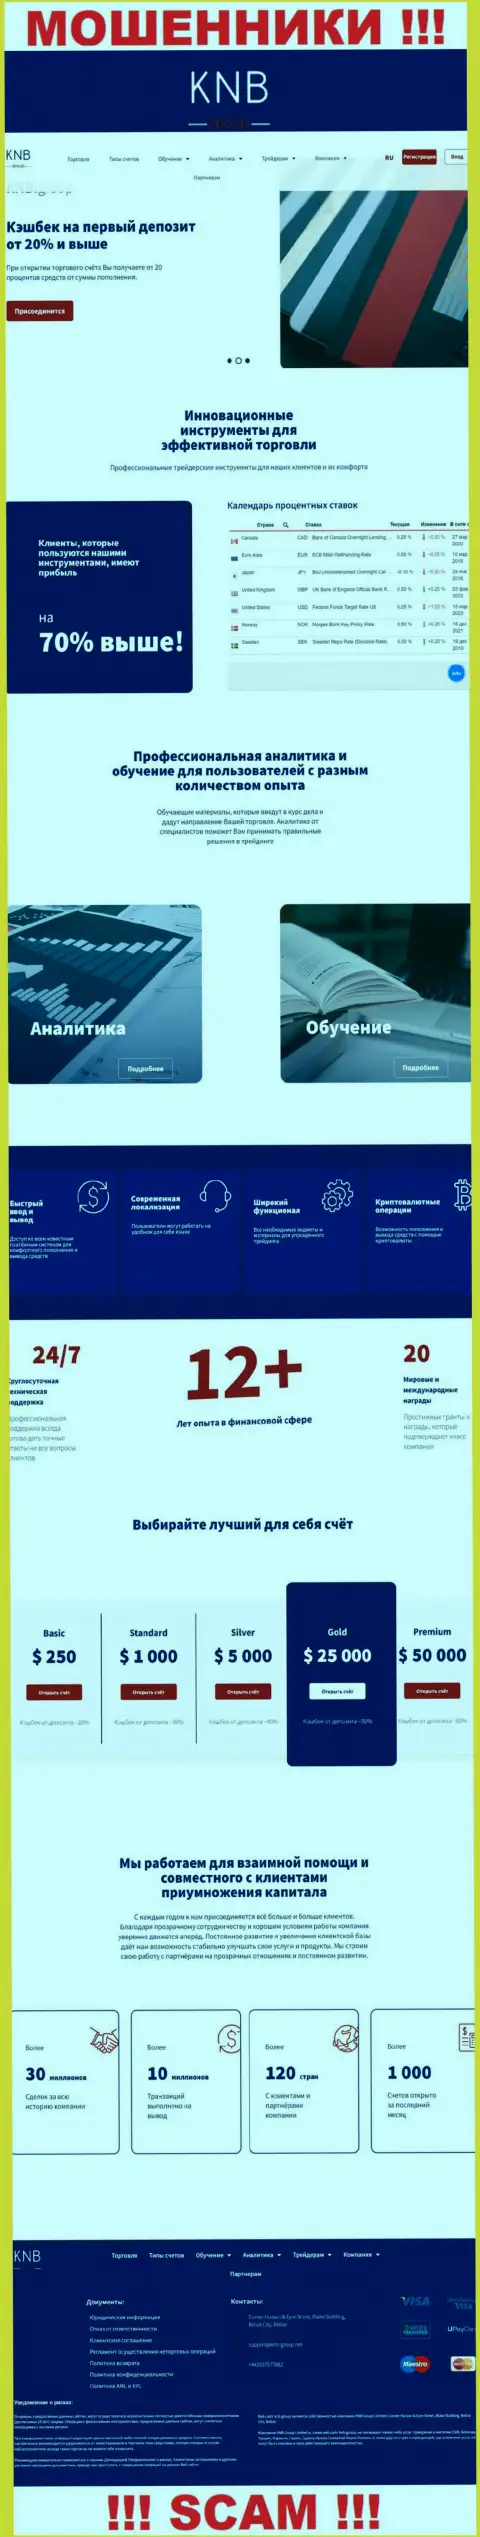 Обзор официального web-портала мошенников КНБ Групп